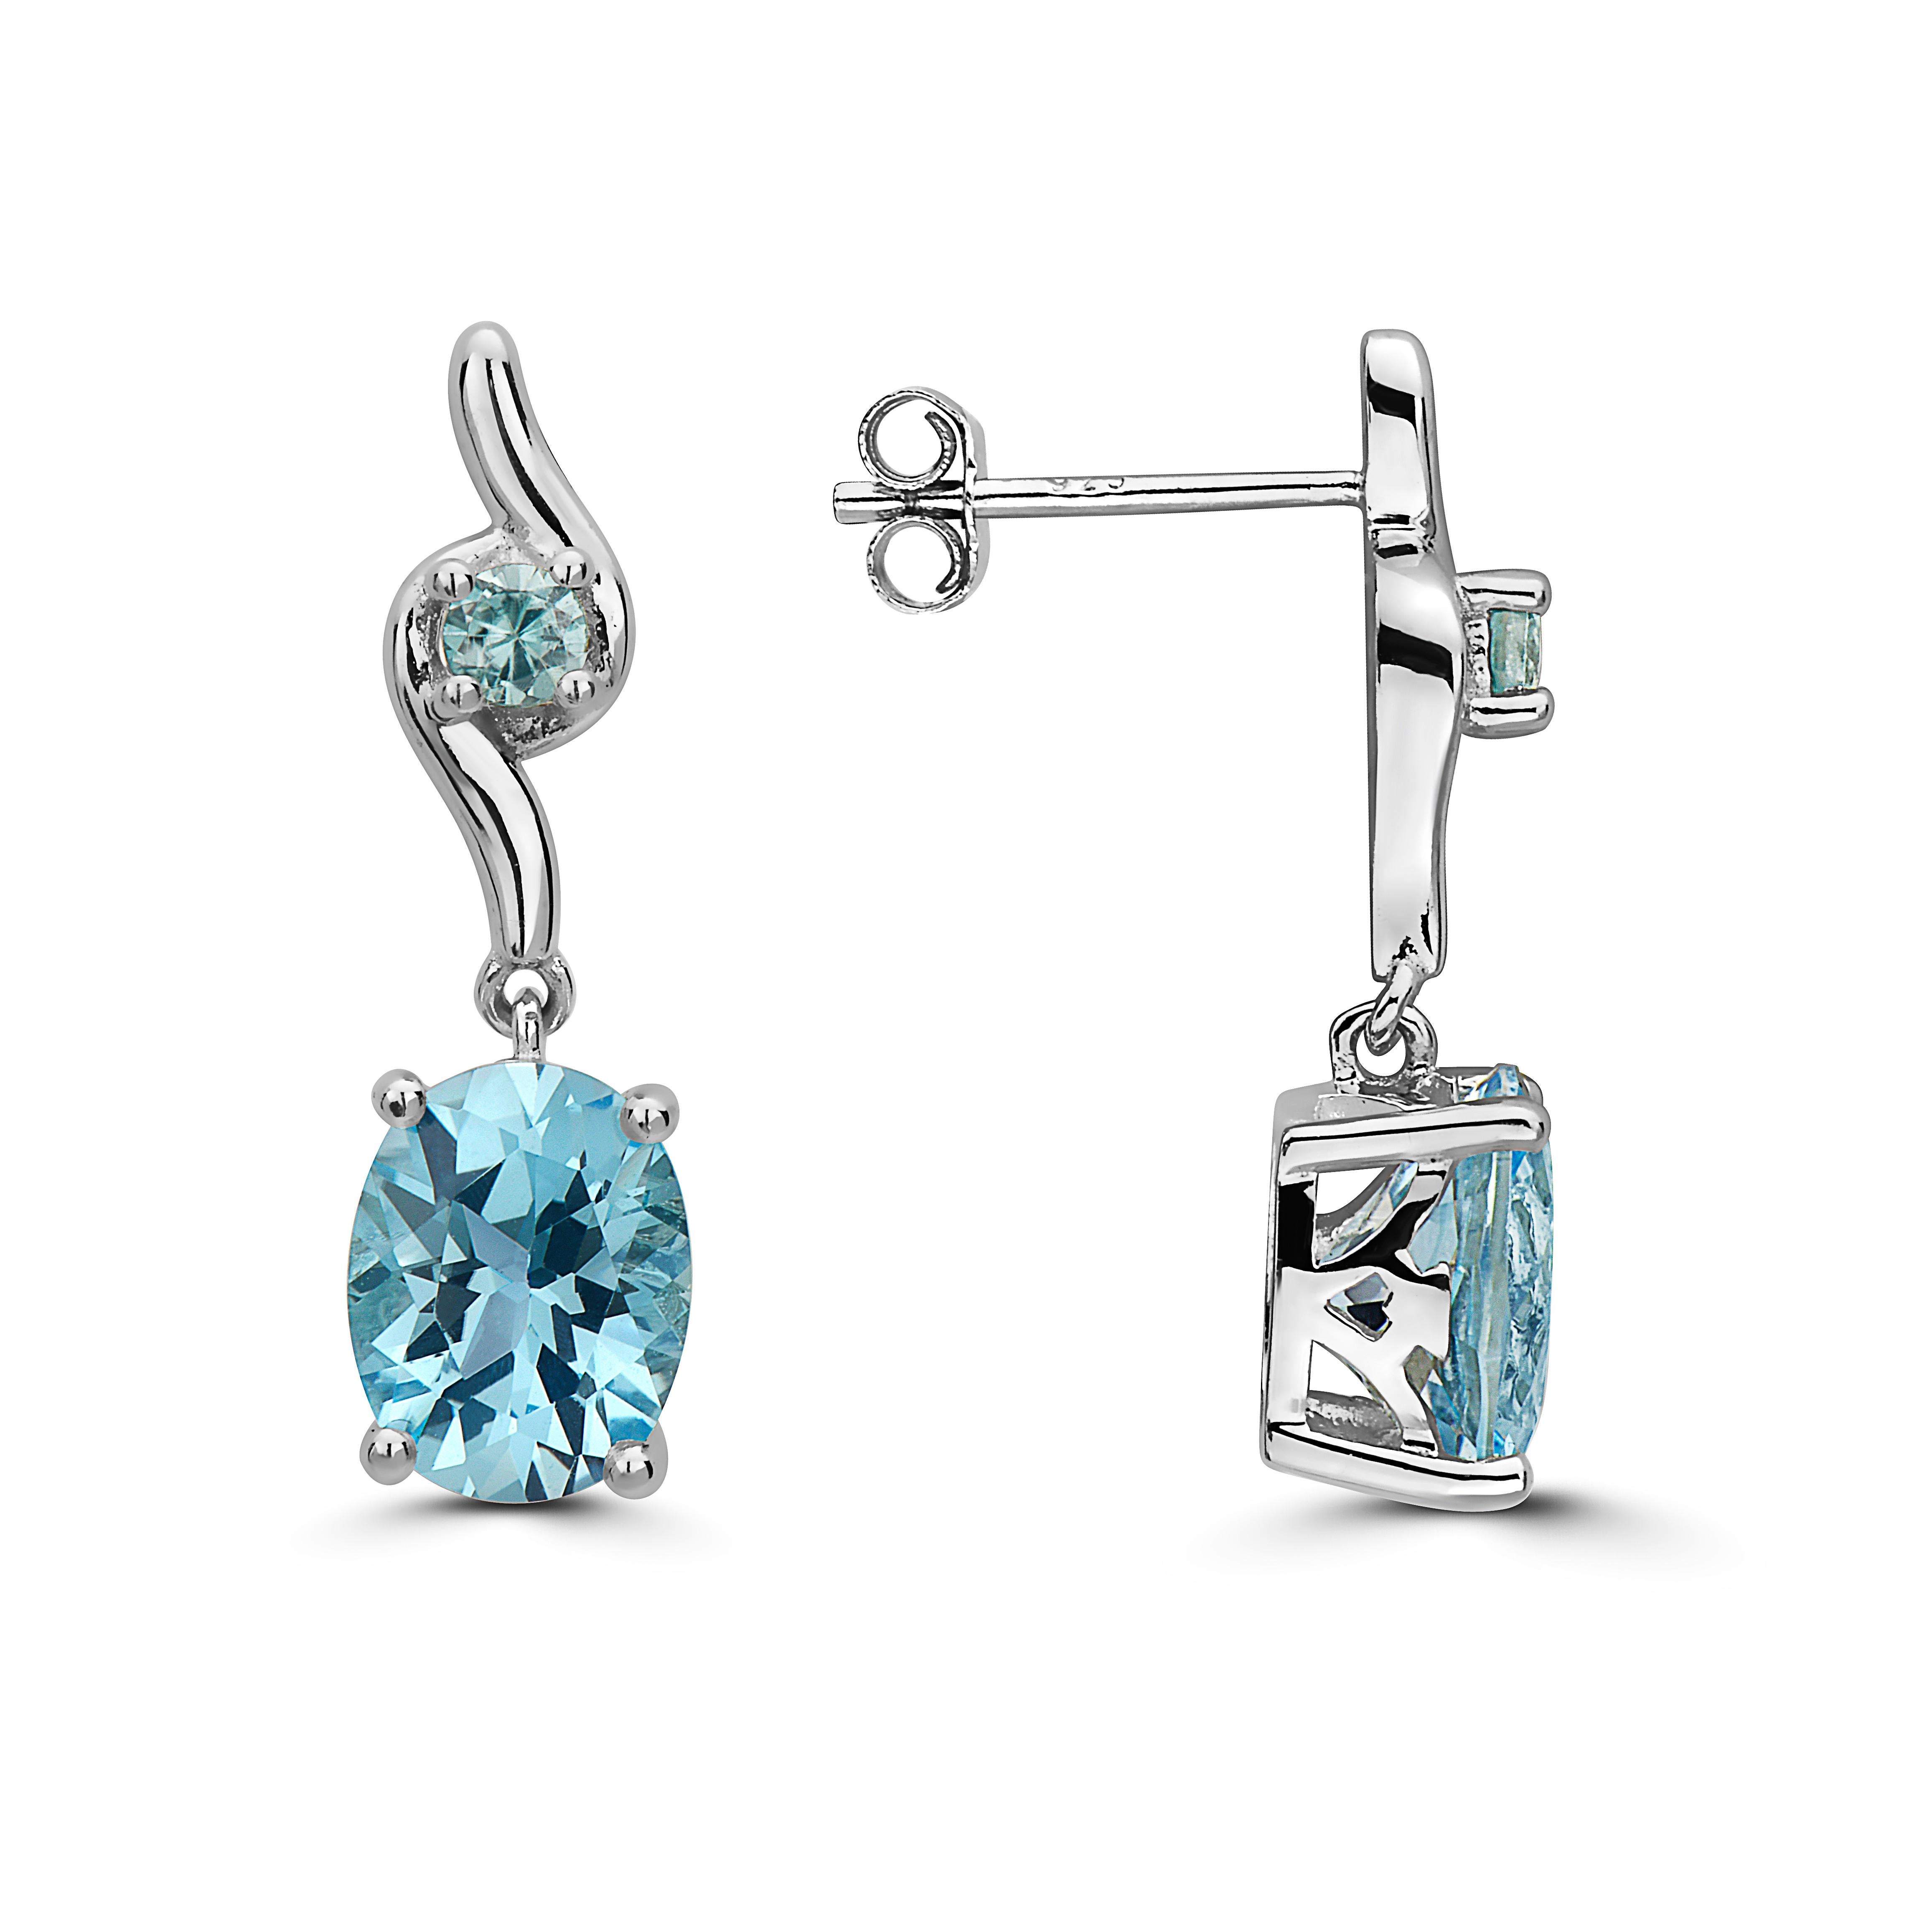 levian blue topaz earrings